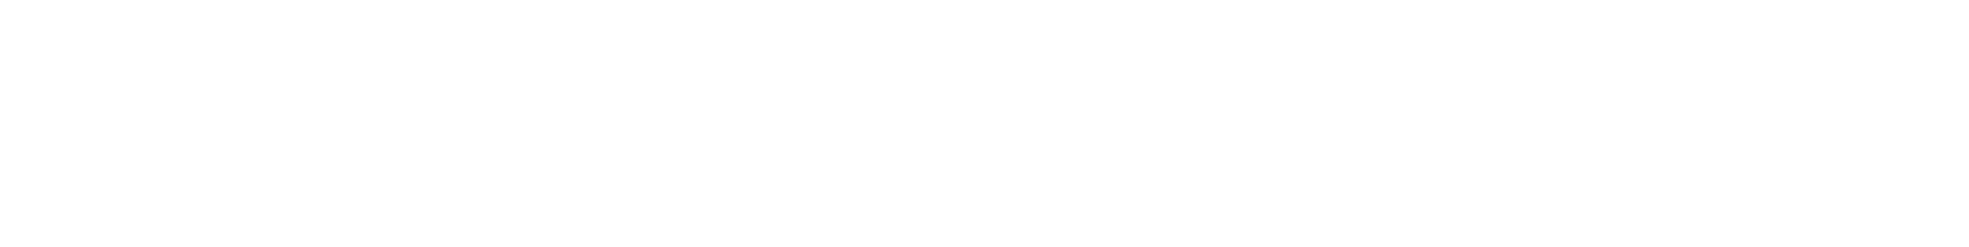 MOVES® SLC™ white logo